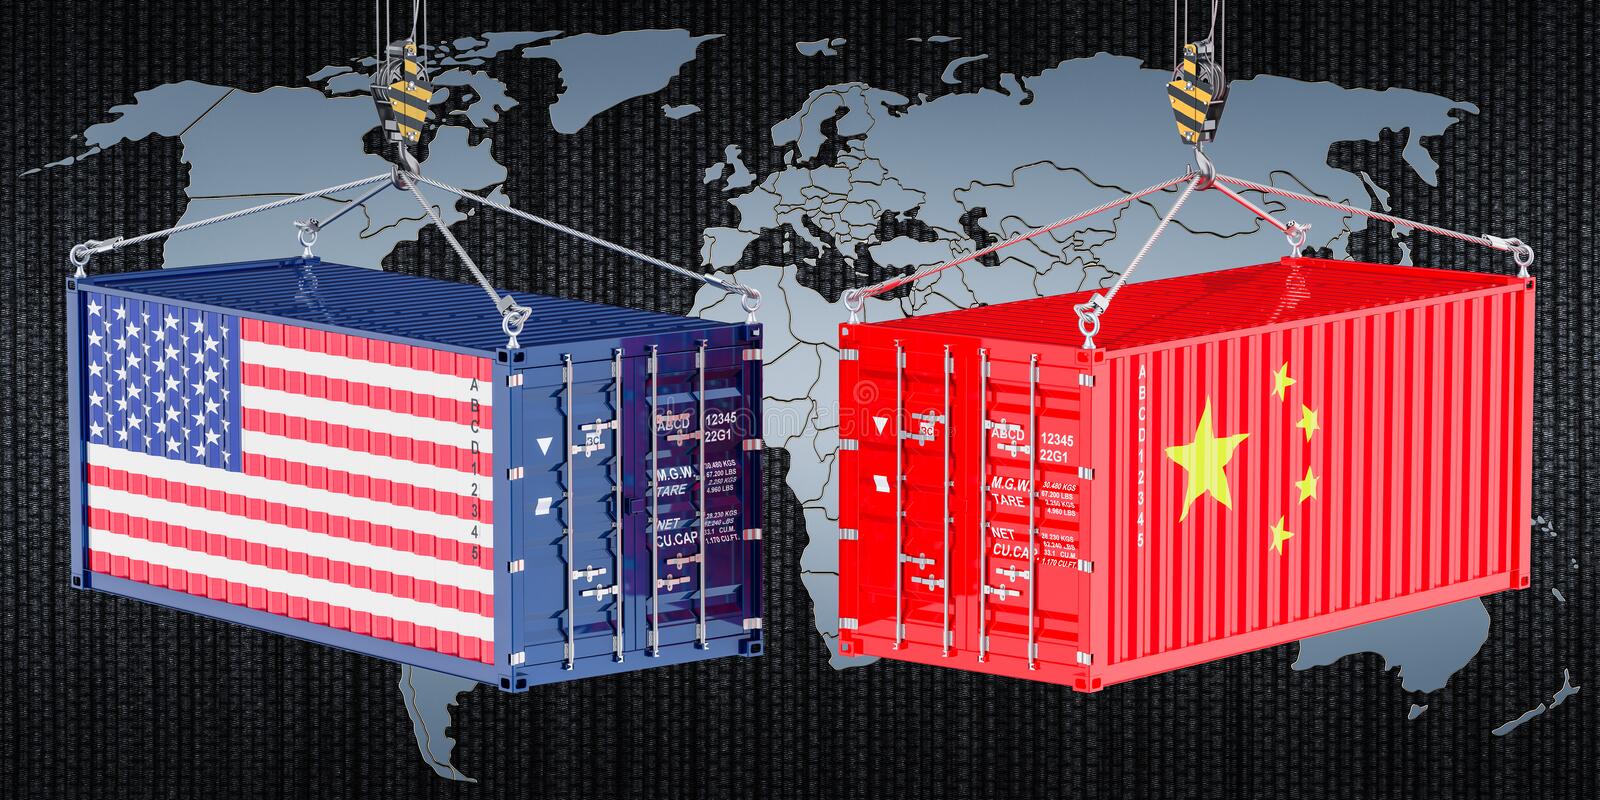 Εμπόριο: «Μομφή» του Πεκίνου κατά της Ουάσινγκτον